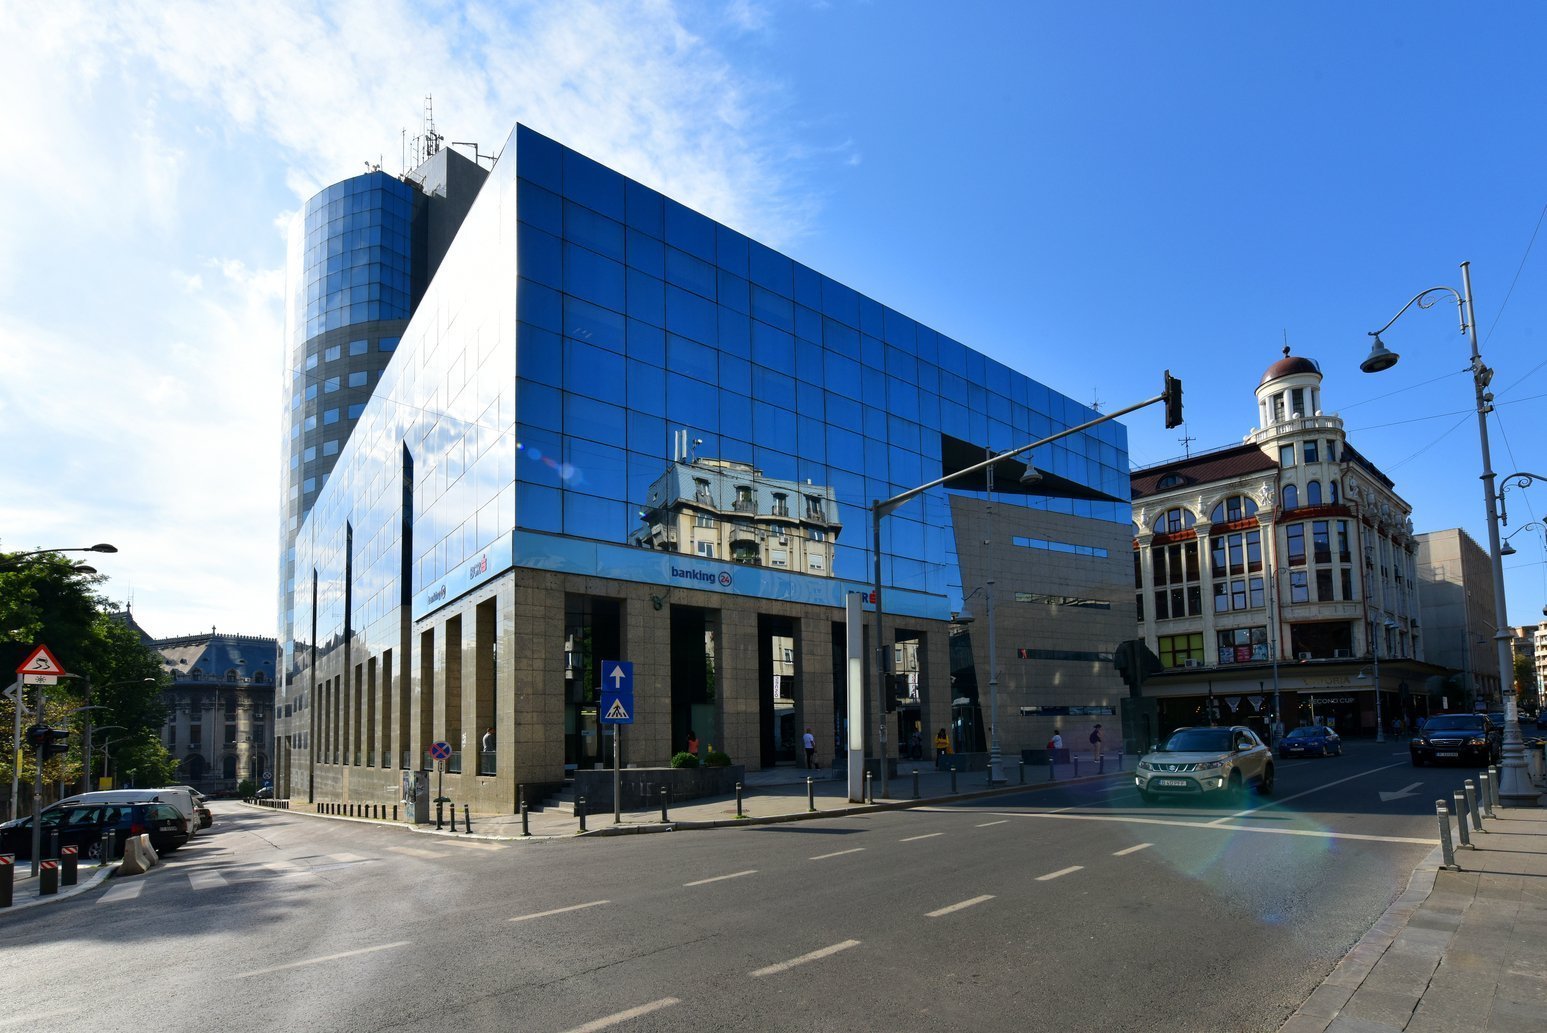 Immofinanz a cumpărat fostul sediu BCR, Bucharest Financial Plaza. Clădirea a costat 36 de milioane de euro